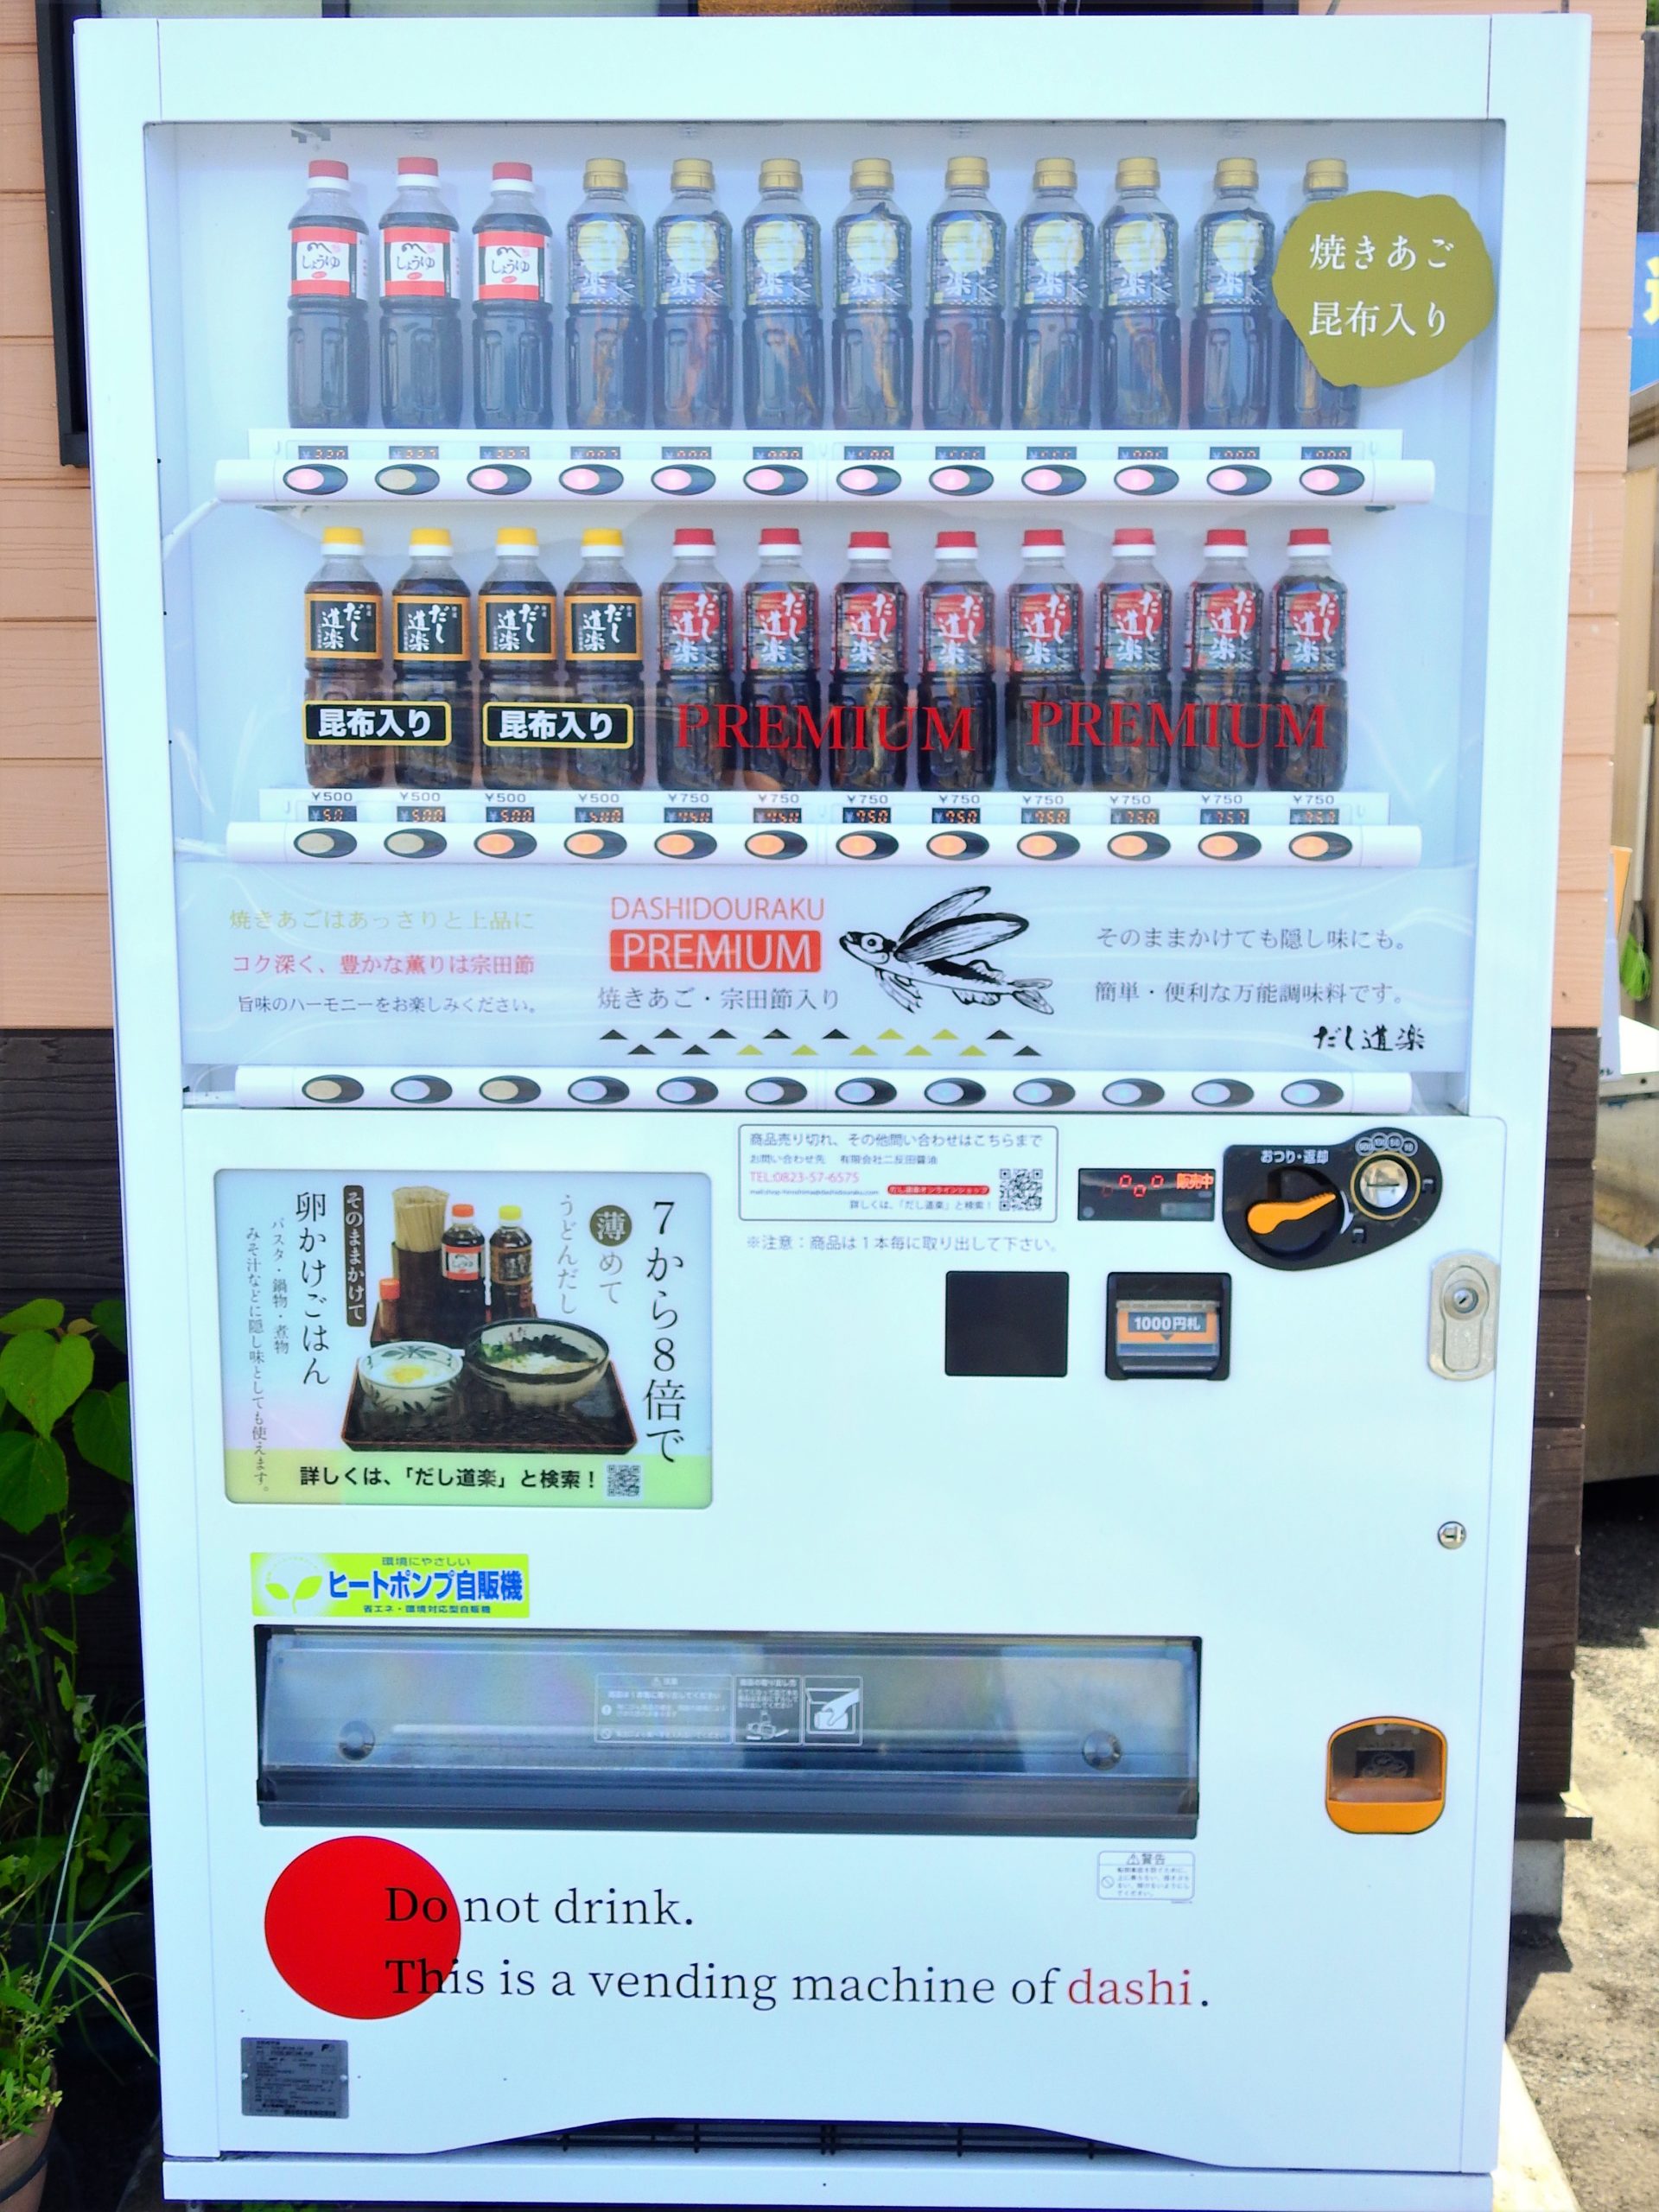 広島県 レア自販機